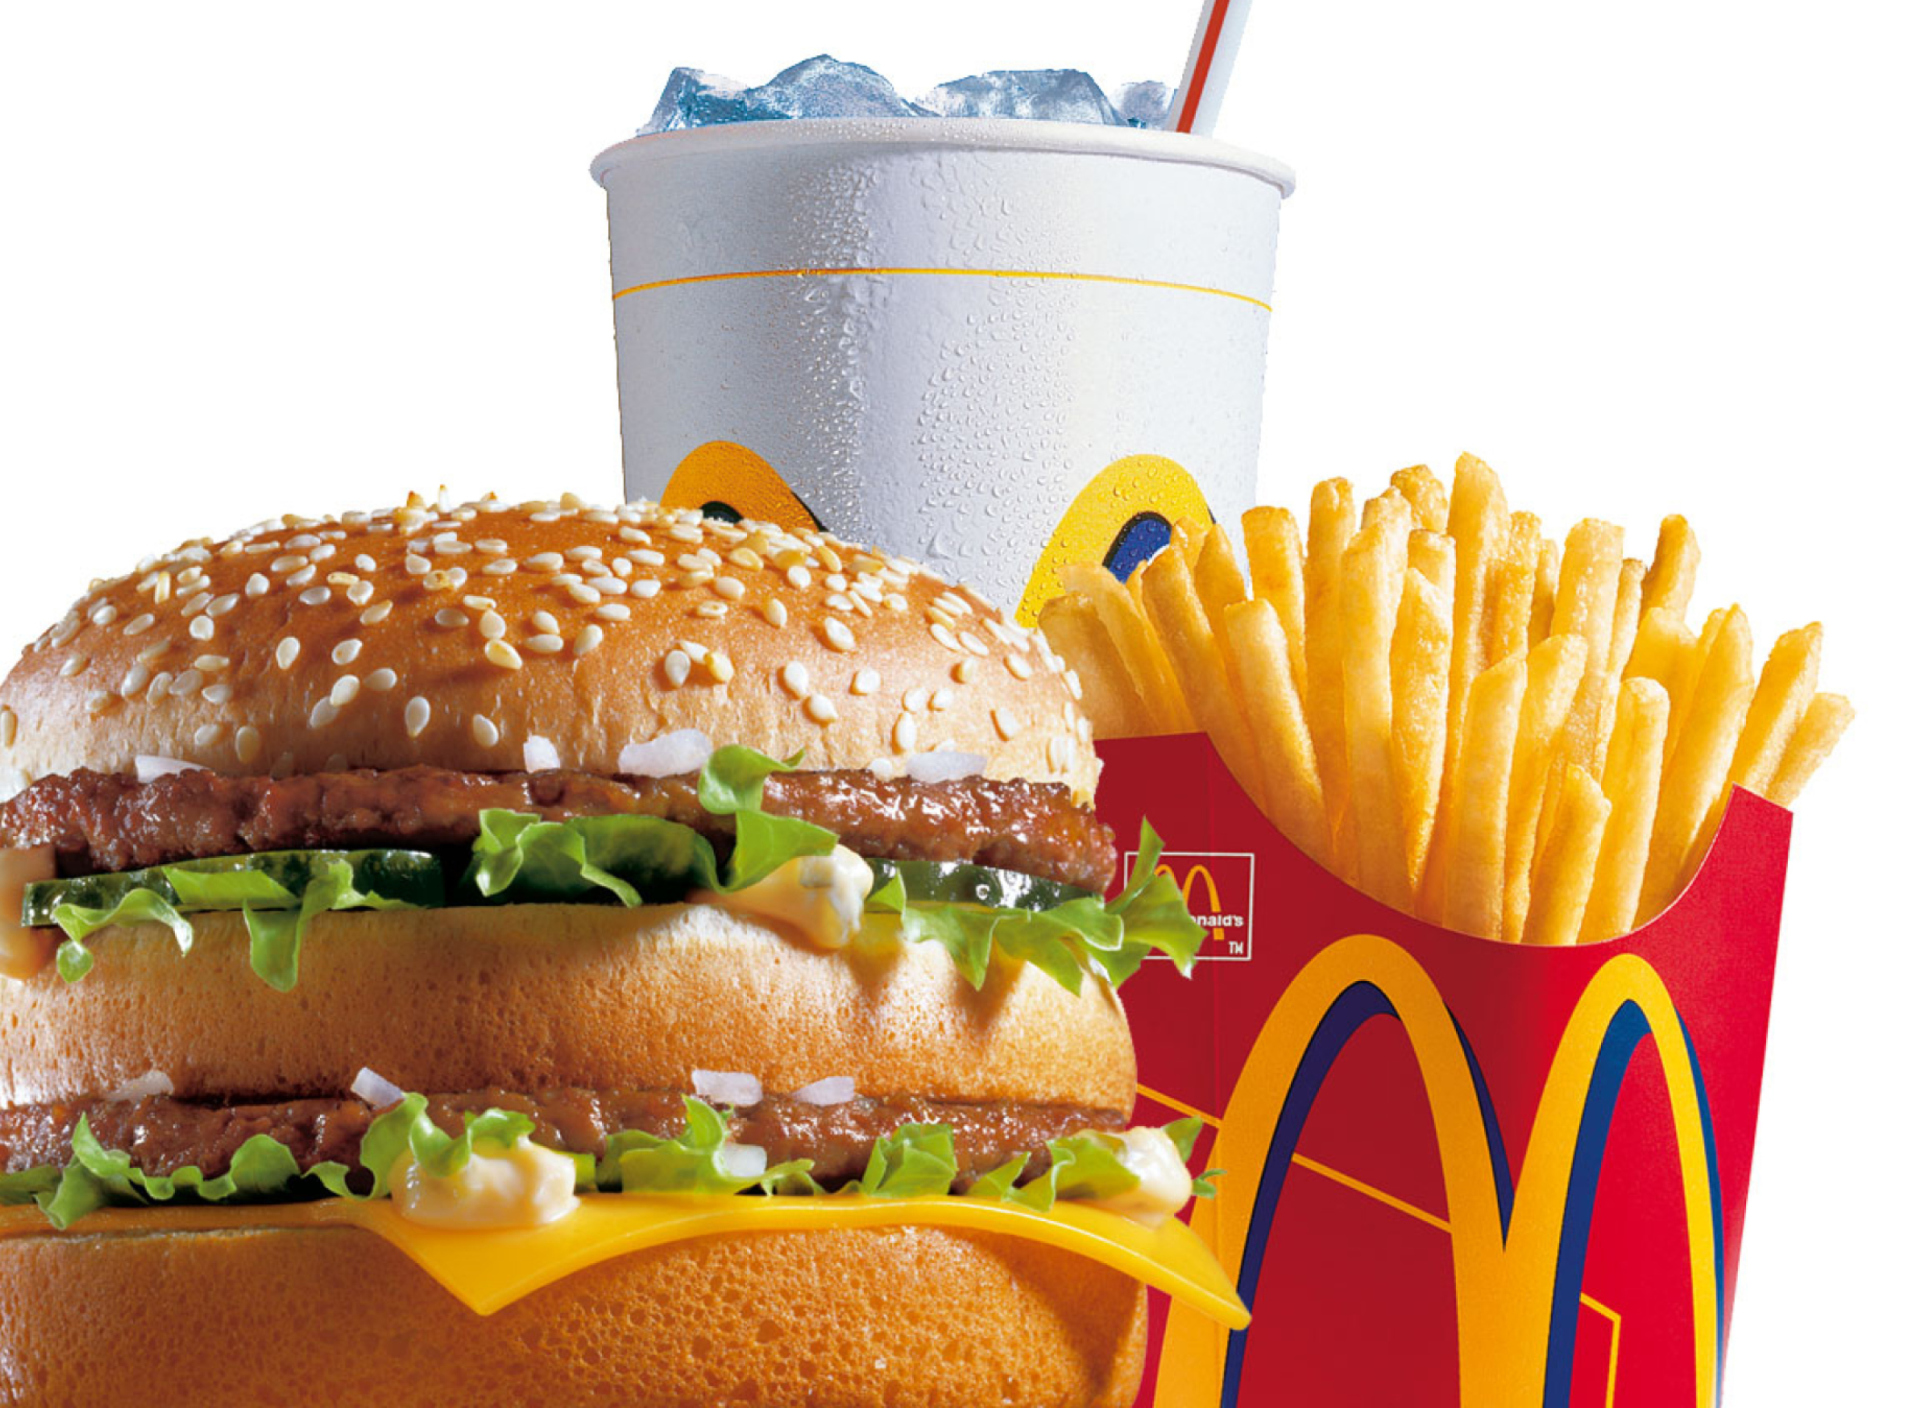 McDonalds: Big Mac screenshot #1 1920x1408